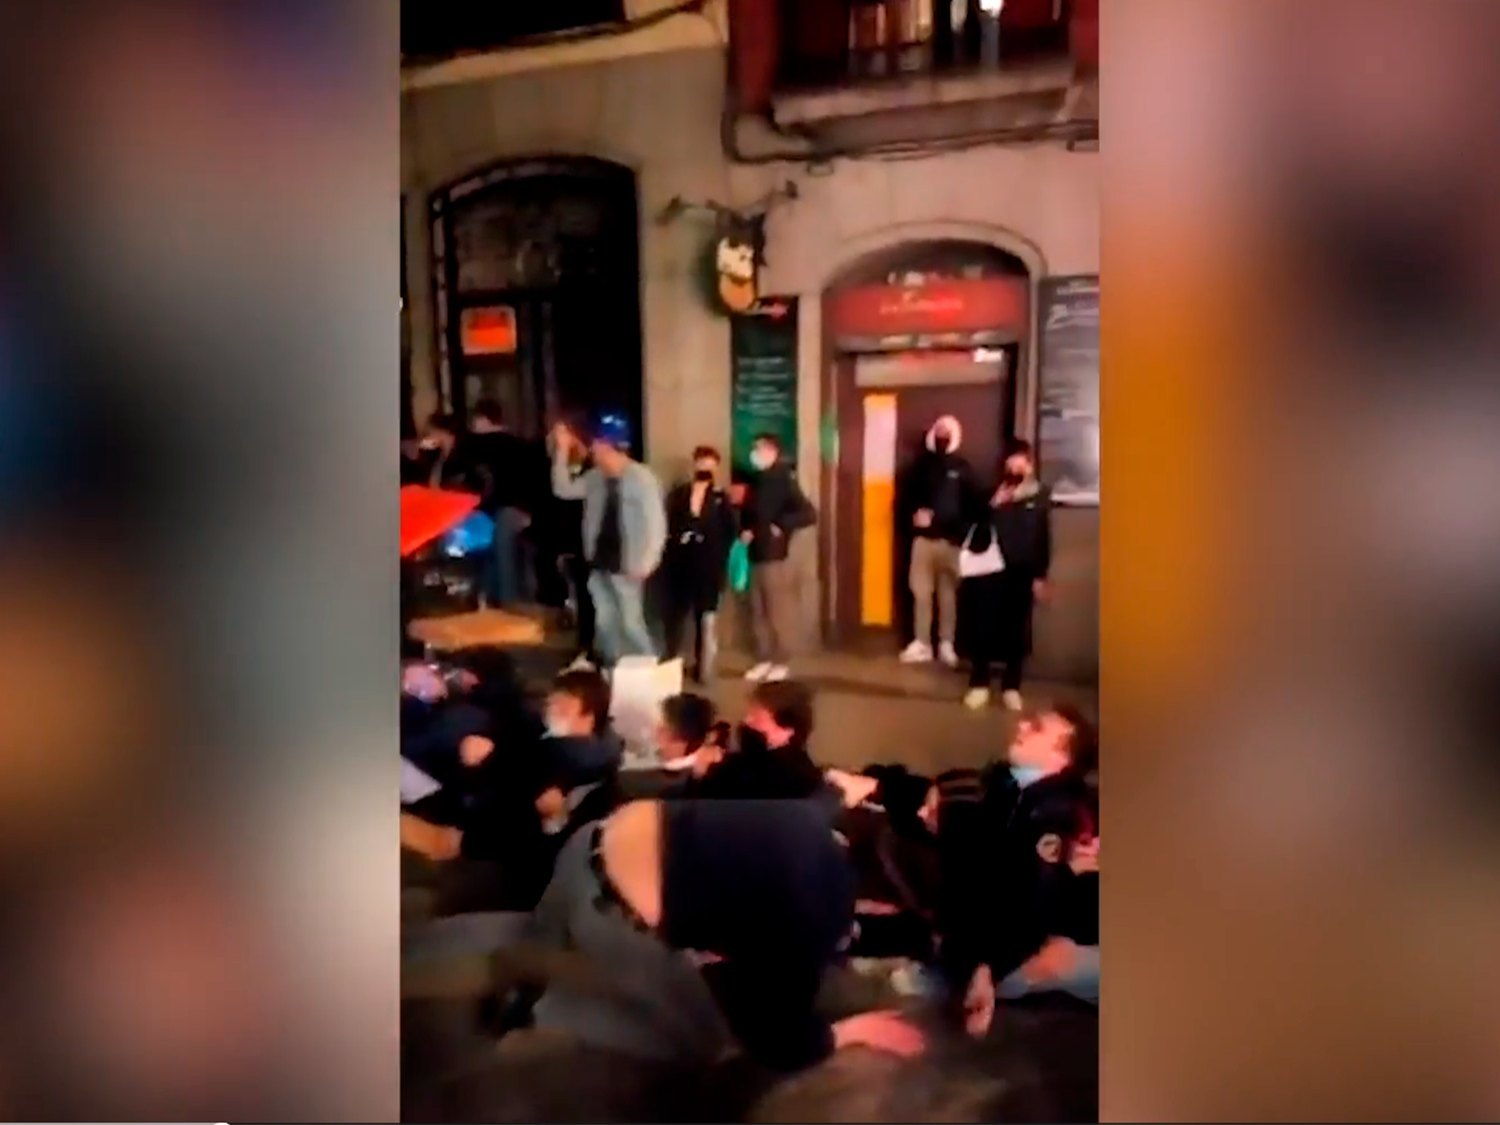 Decenas de jóvenes jugando sin mascarilla en Madrid tras el toque de queda ante la pasividad de la policía